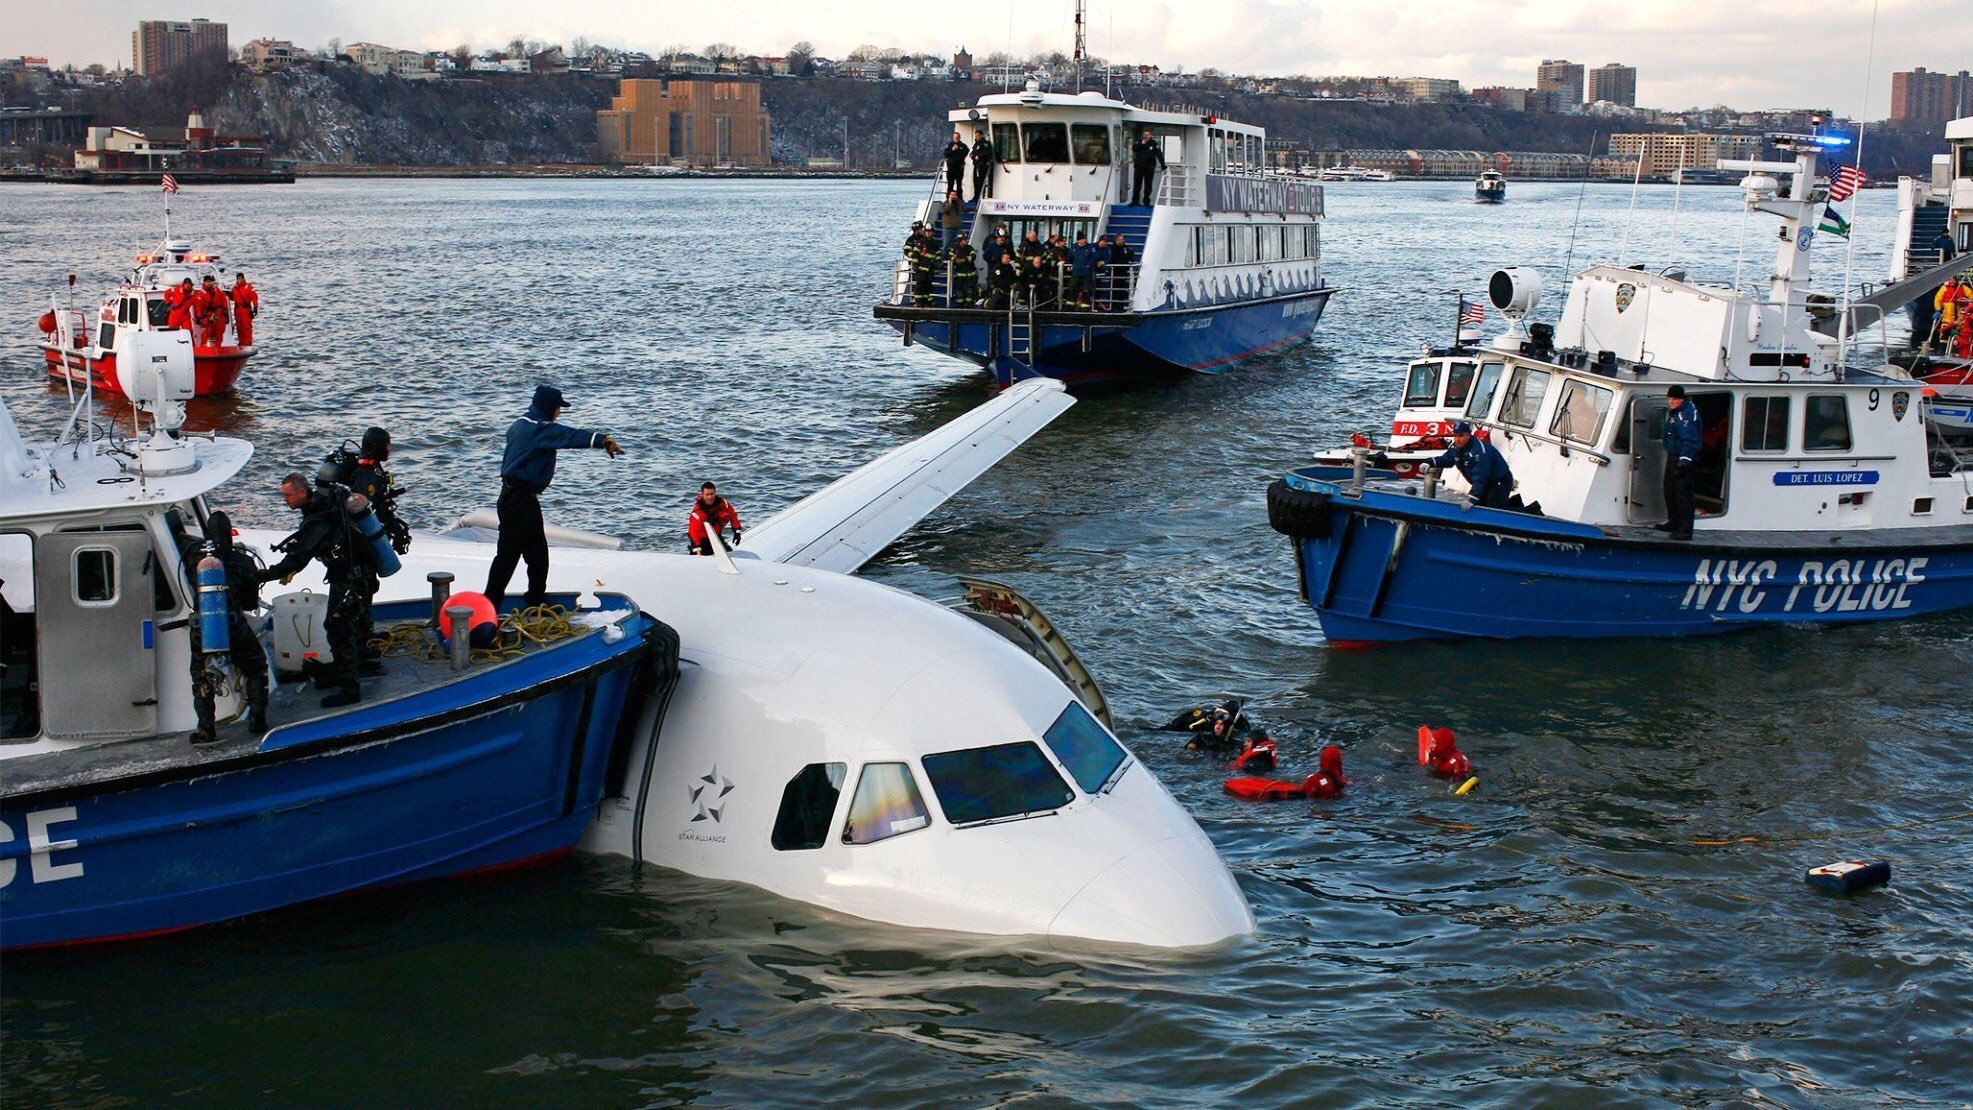 Почему нельзя посадить самолет на воду. много ли известно случаев, когда при аварийной посадке самолета на воду все оставались живы